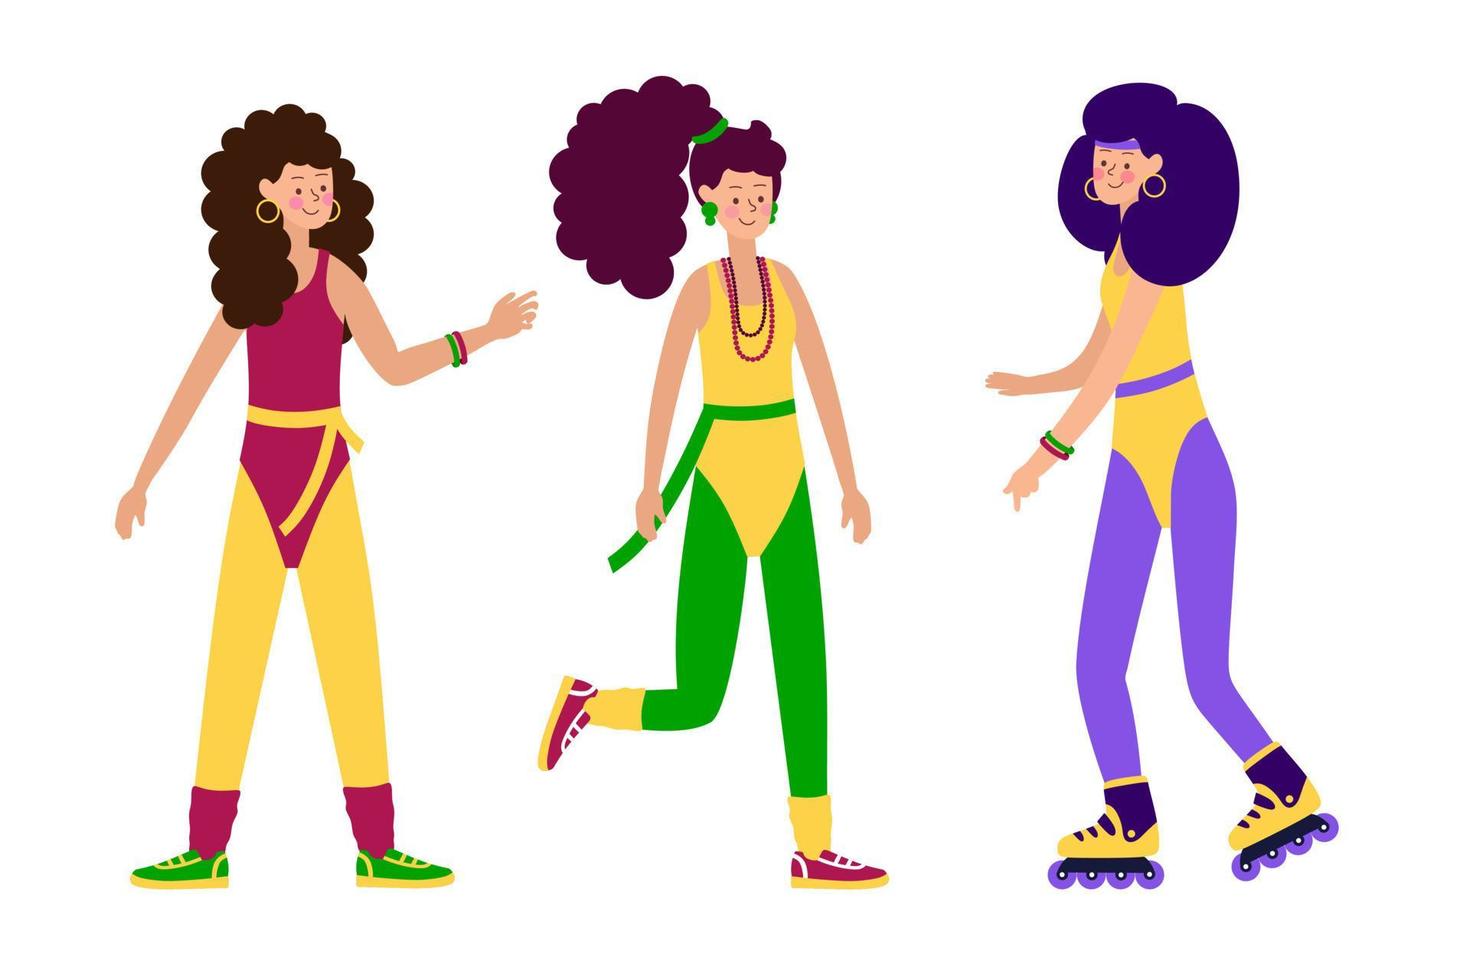 garotas de personagens jovens felizes em roupas da moda, leggings e maiôs e penteados da festa feminina retrô elegante dos anos 80-90. ilustração vetorial de pessoas de desenho animado vetor